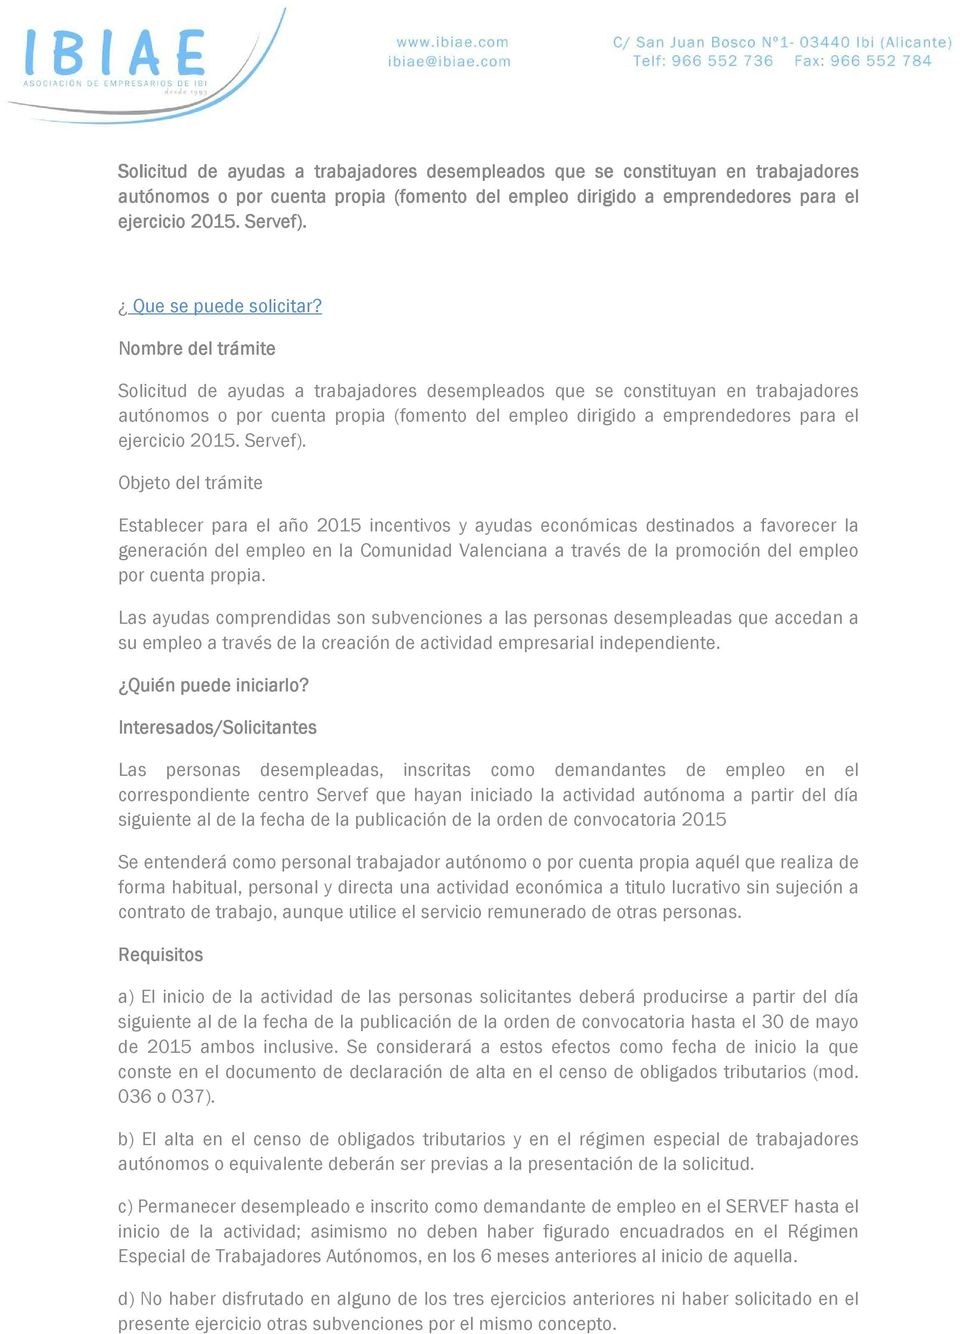 Nombre del trámite  Objeto del trámite Establecer para el año 2015 incentivos y ayudas económicas destinados a favorecer la generación del empleo en la Comunidad Valenciana a través de la promoción